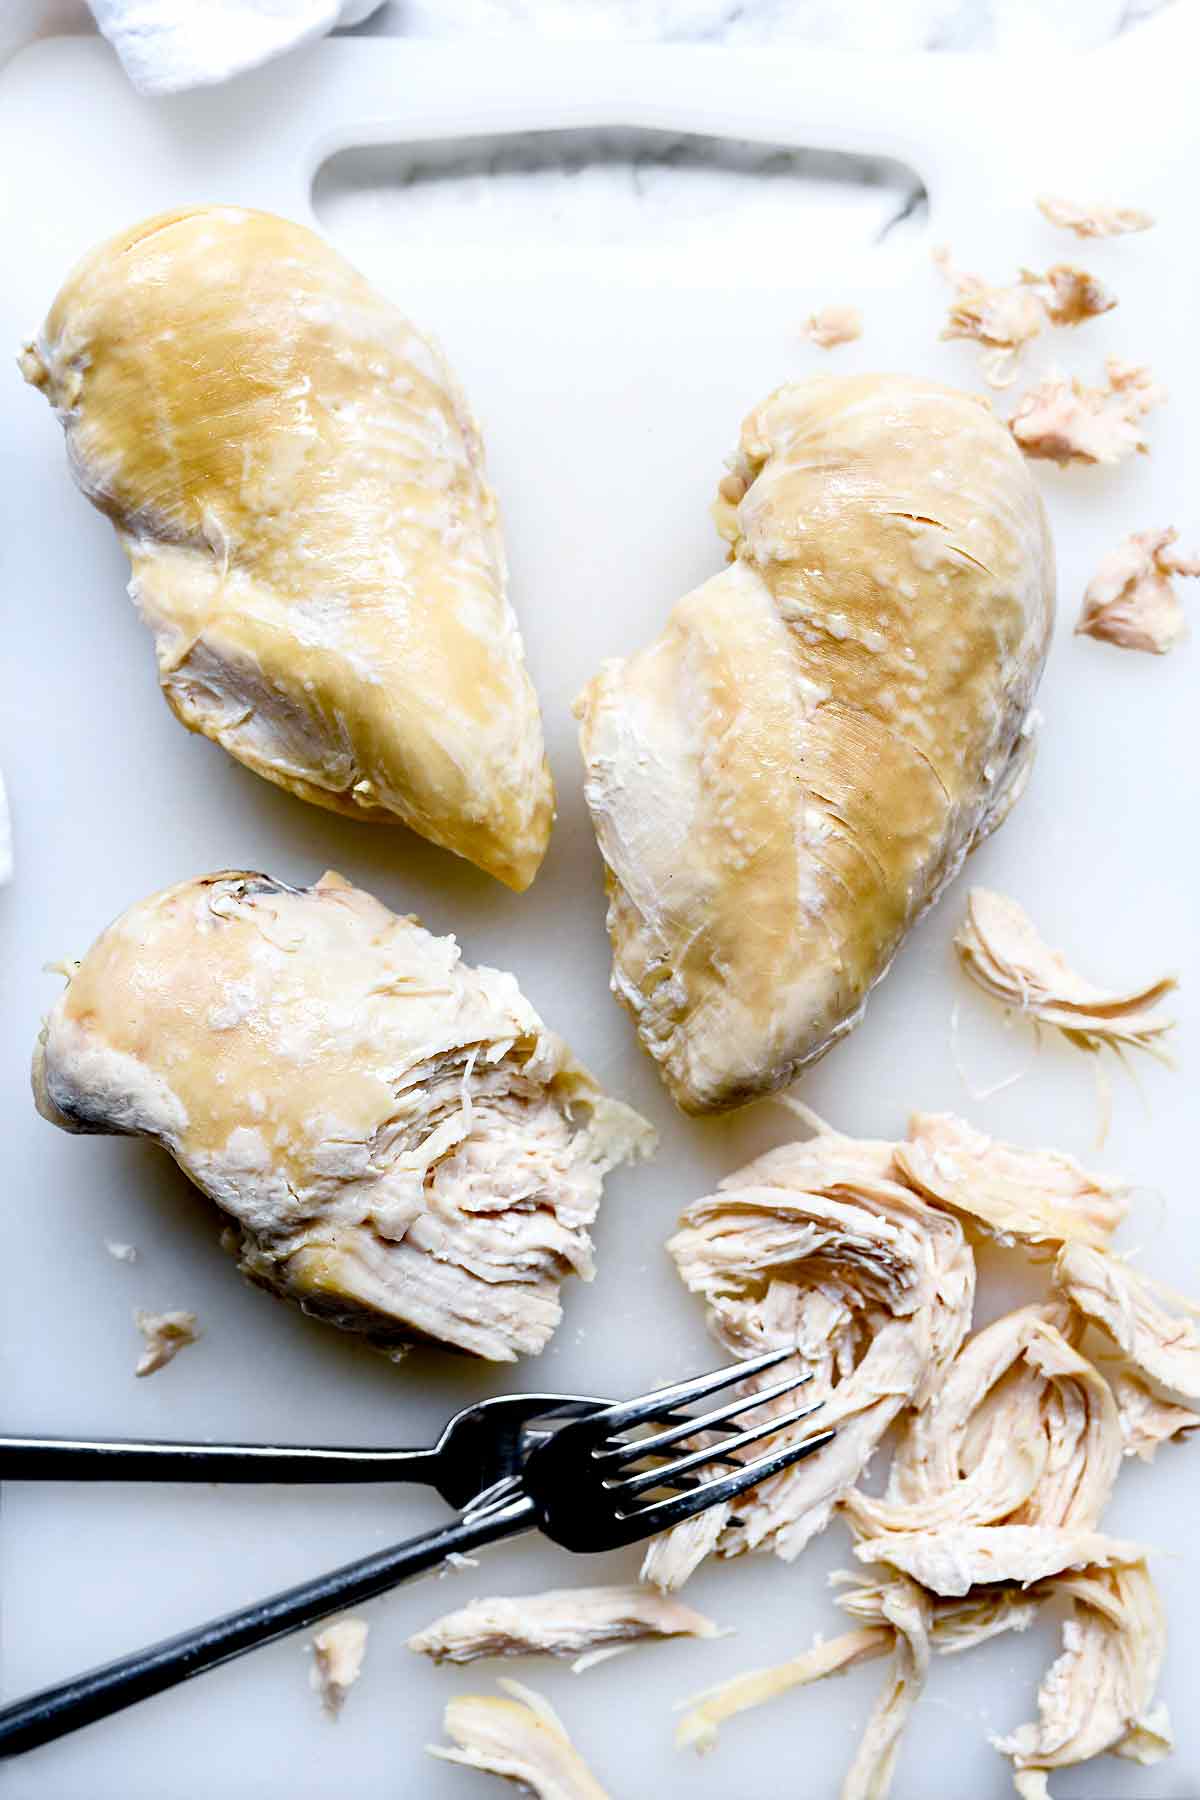 Comment faire cuire des poitrines de poulet à l'instantané | foodiecrush.com #recipes #chicken #breasts #instantpot #pressurecooker